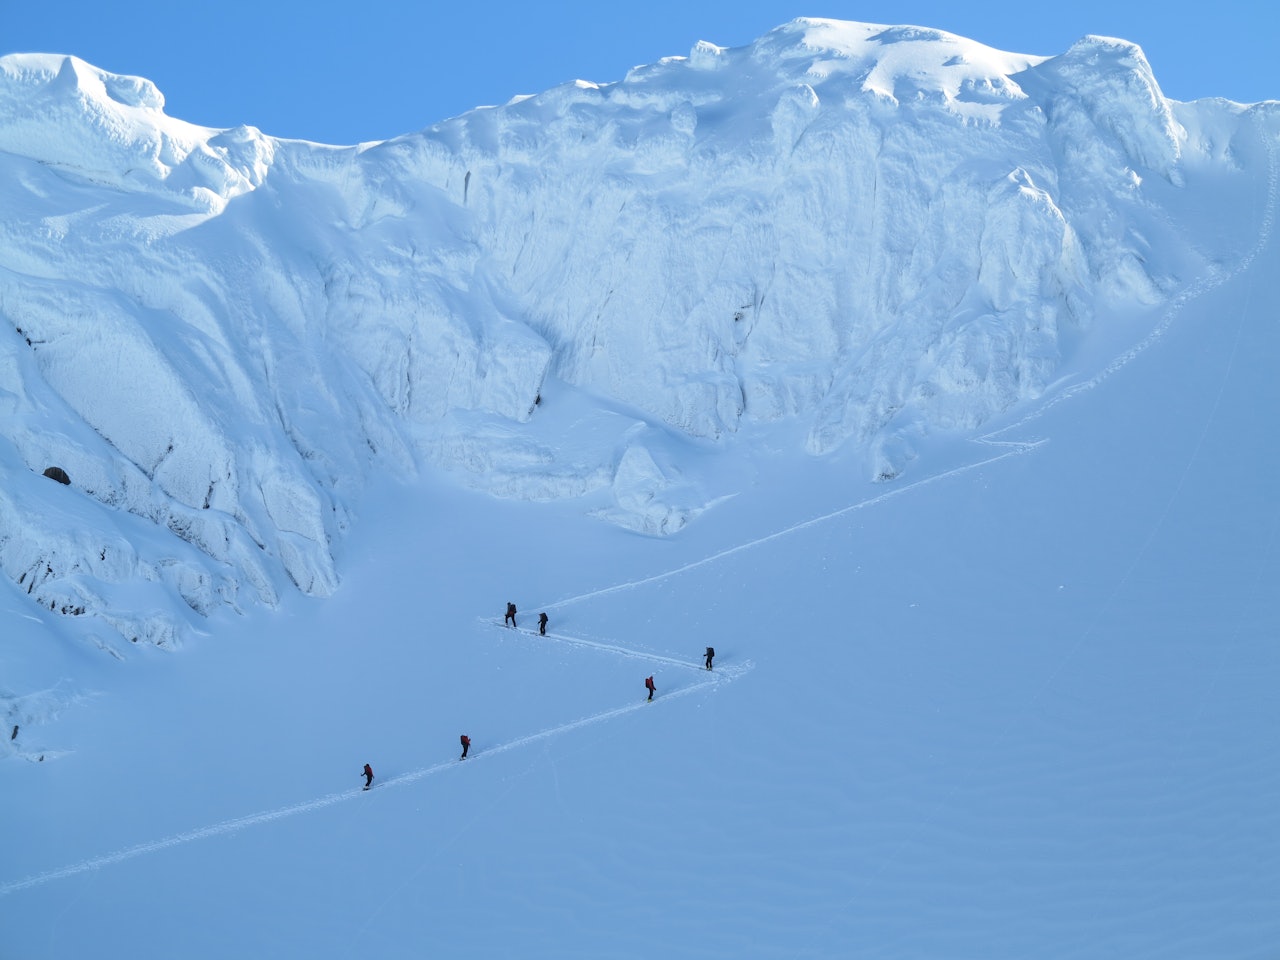 Å leie seg en guide for å dra på toppturer på ski har virkelig tatt av, forteller tindevegleder Halvor Dannevig i Bre og Fjell. Foto: Sandra Lappegard